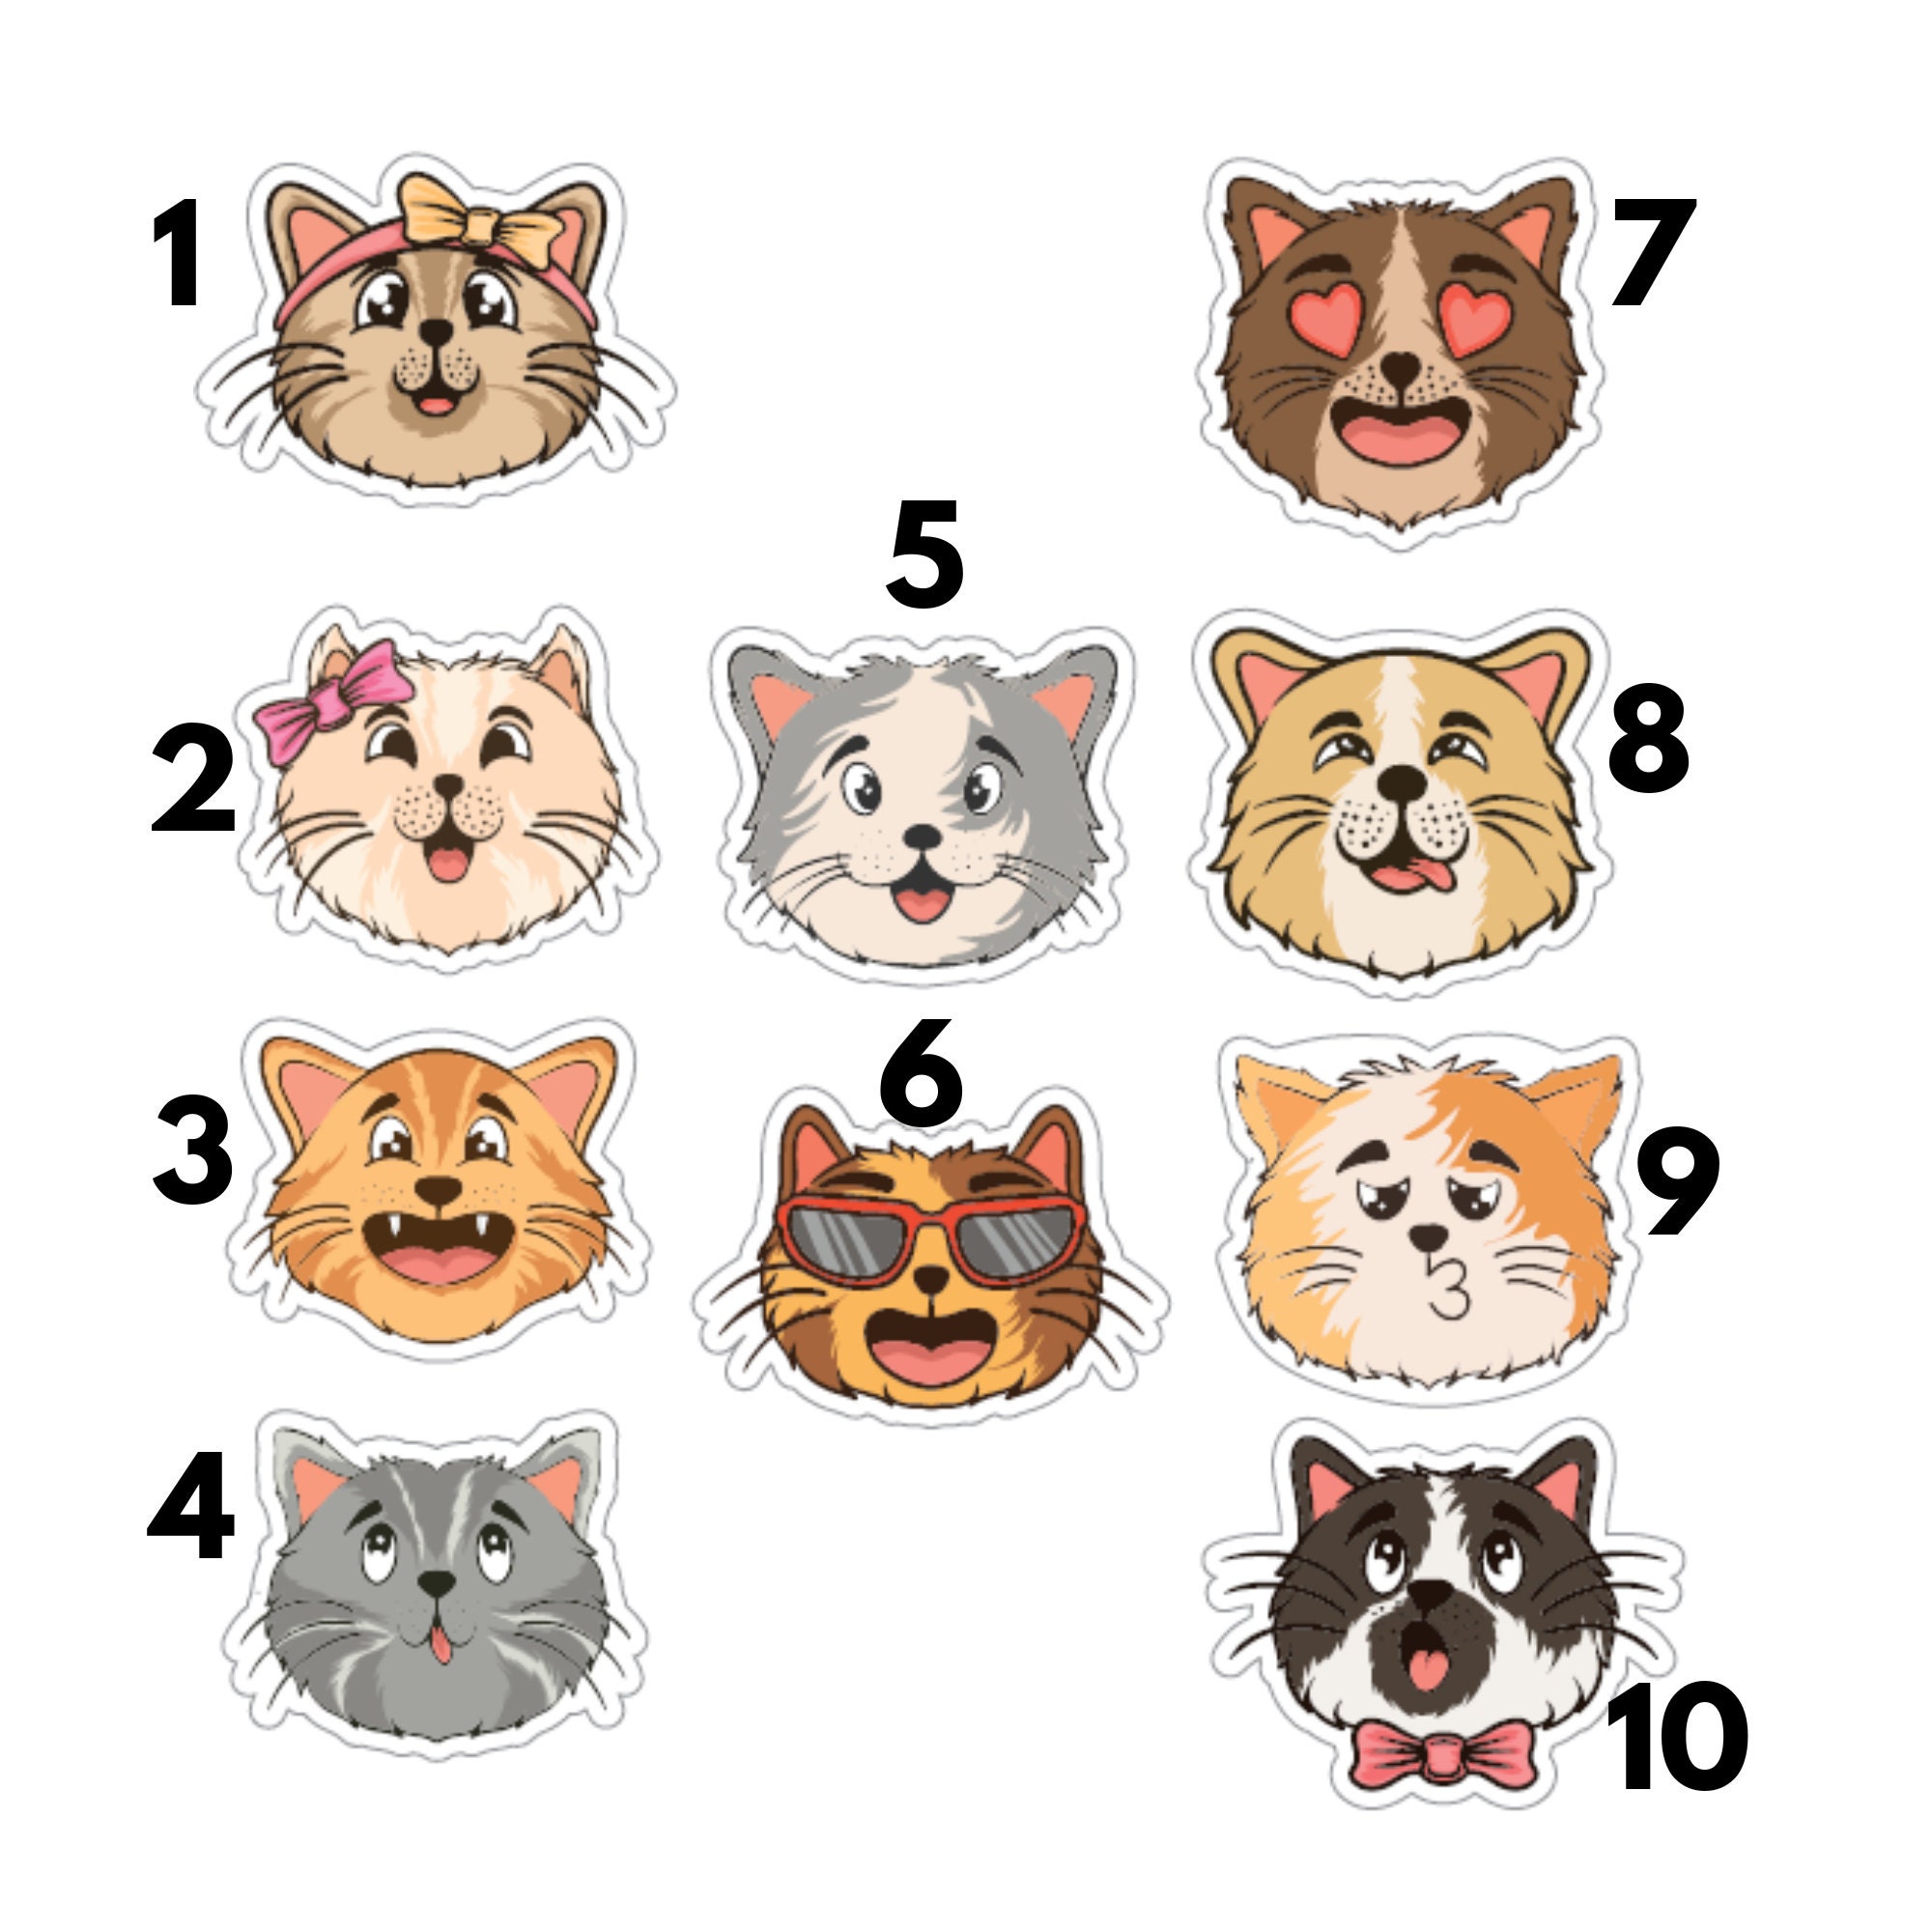 Holographischer Sticker "Katzen" | Sticker Set - Aufkleber 10 Sticker zur Auswahl I wasserfest